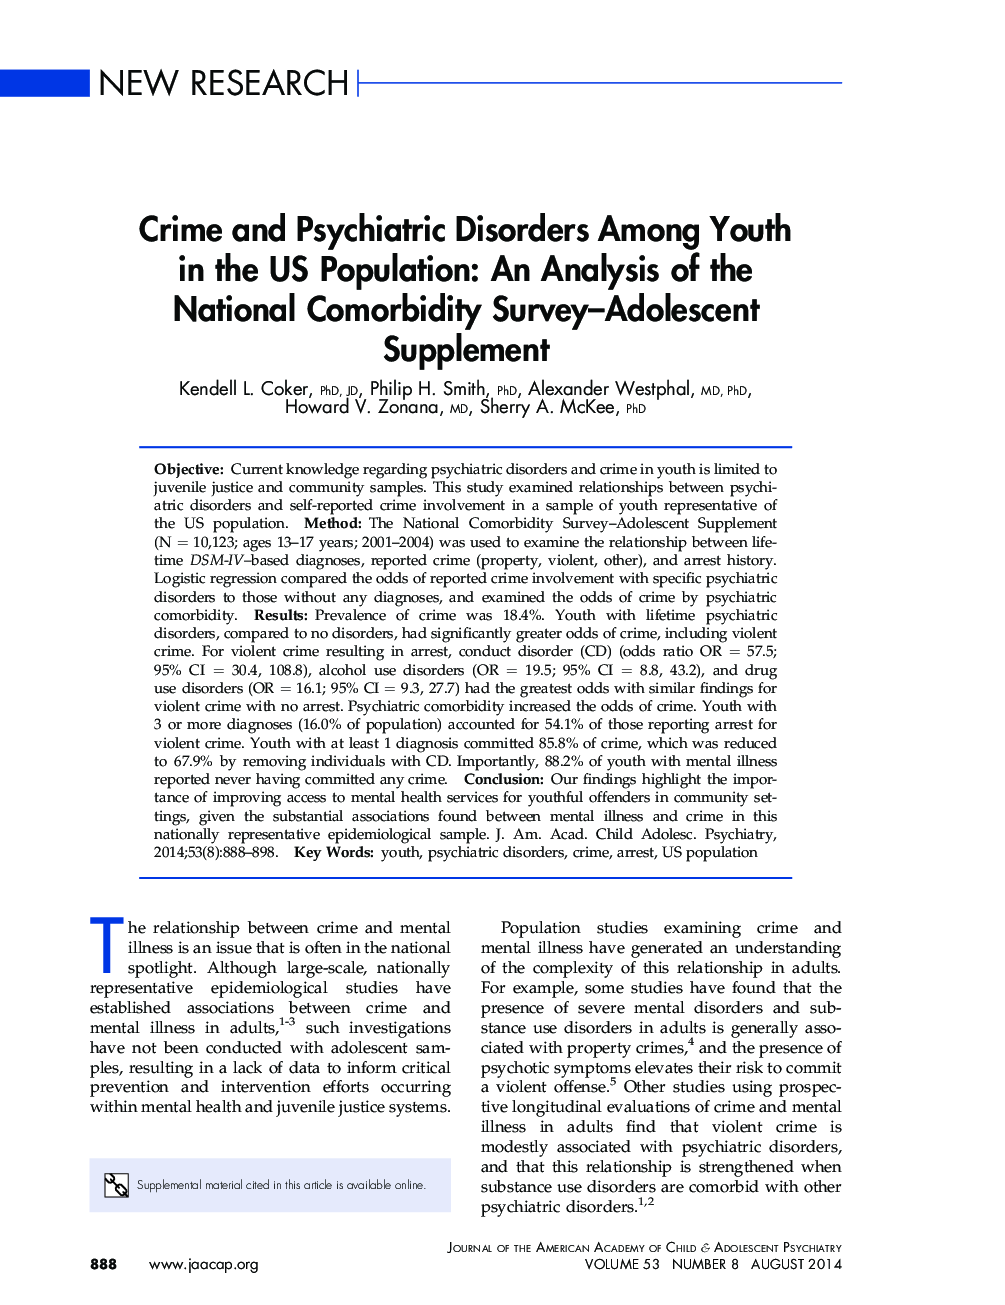 جرایم و اختلالات روانپزشکی در میان جوانان در ایالات متحده جمعیت: تجزیه و تحلیل ملاحظات جمعیت ملی- نوجوانان 